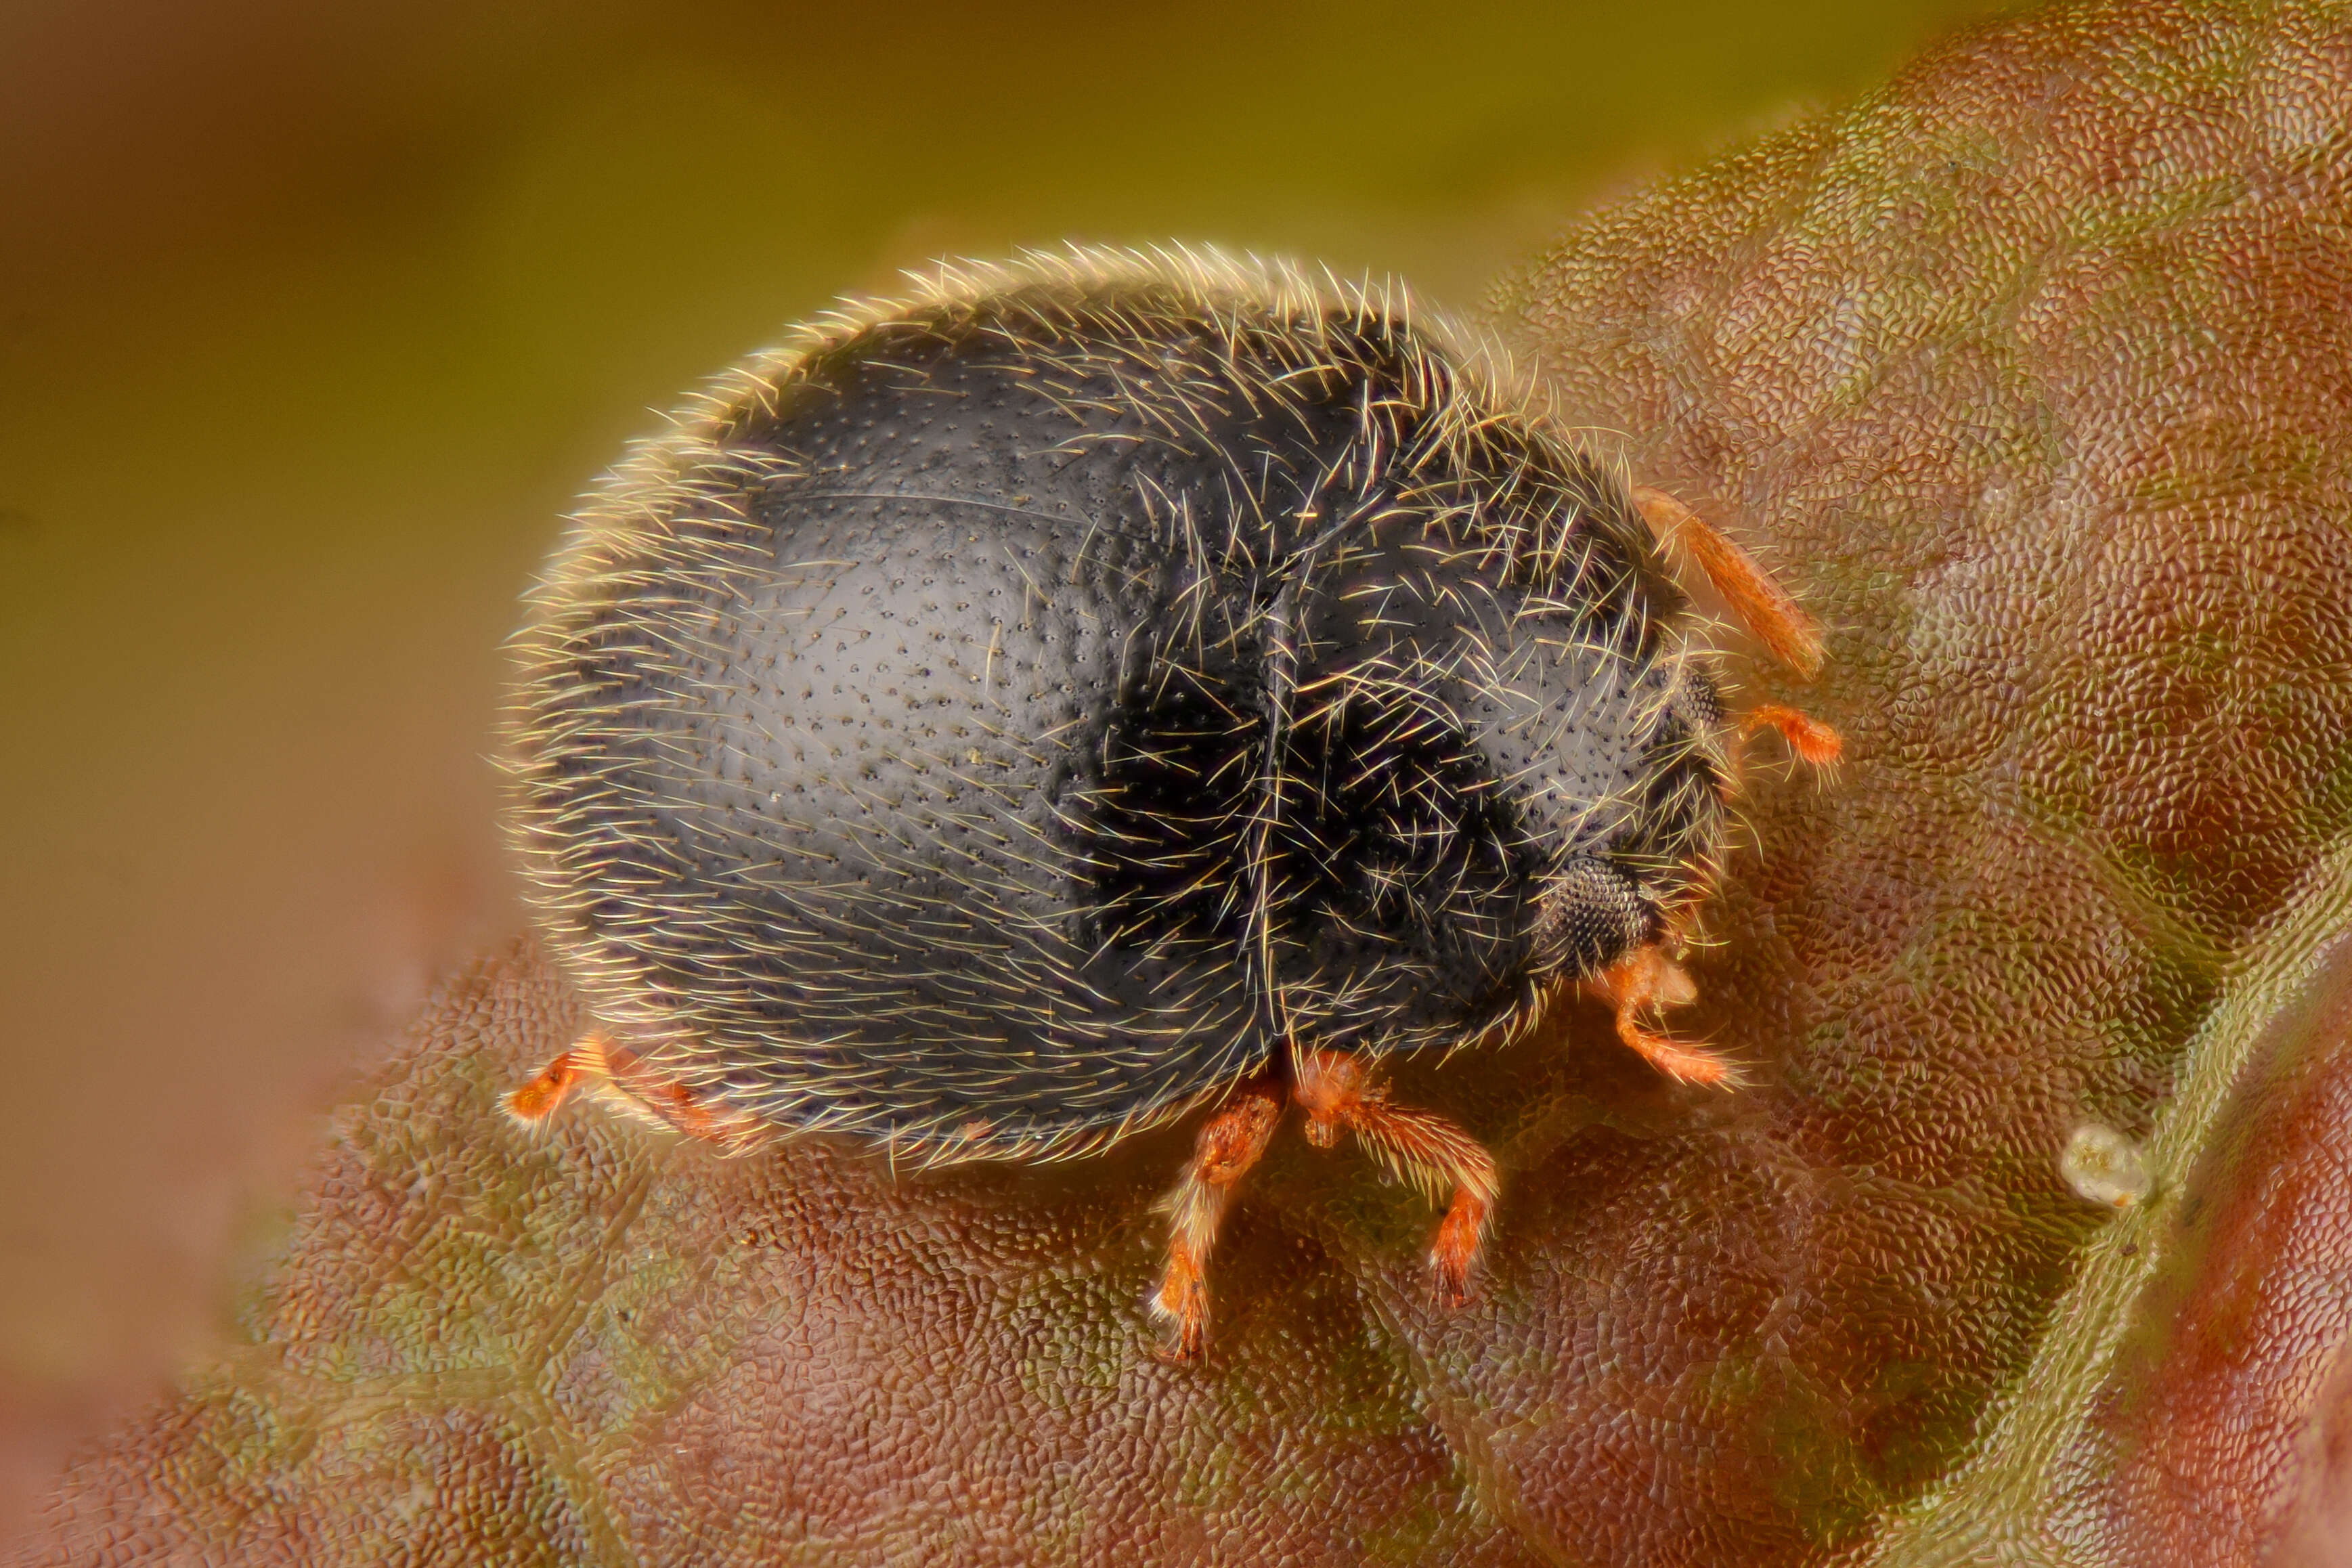 Image of Ladybird beetle